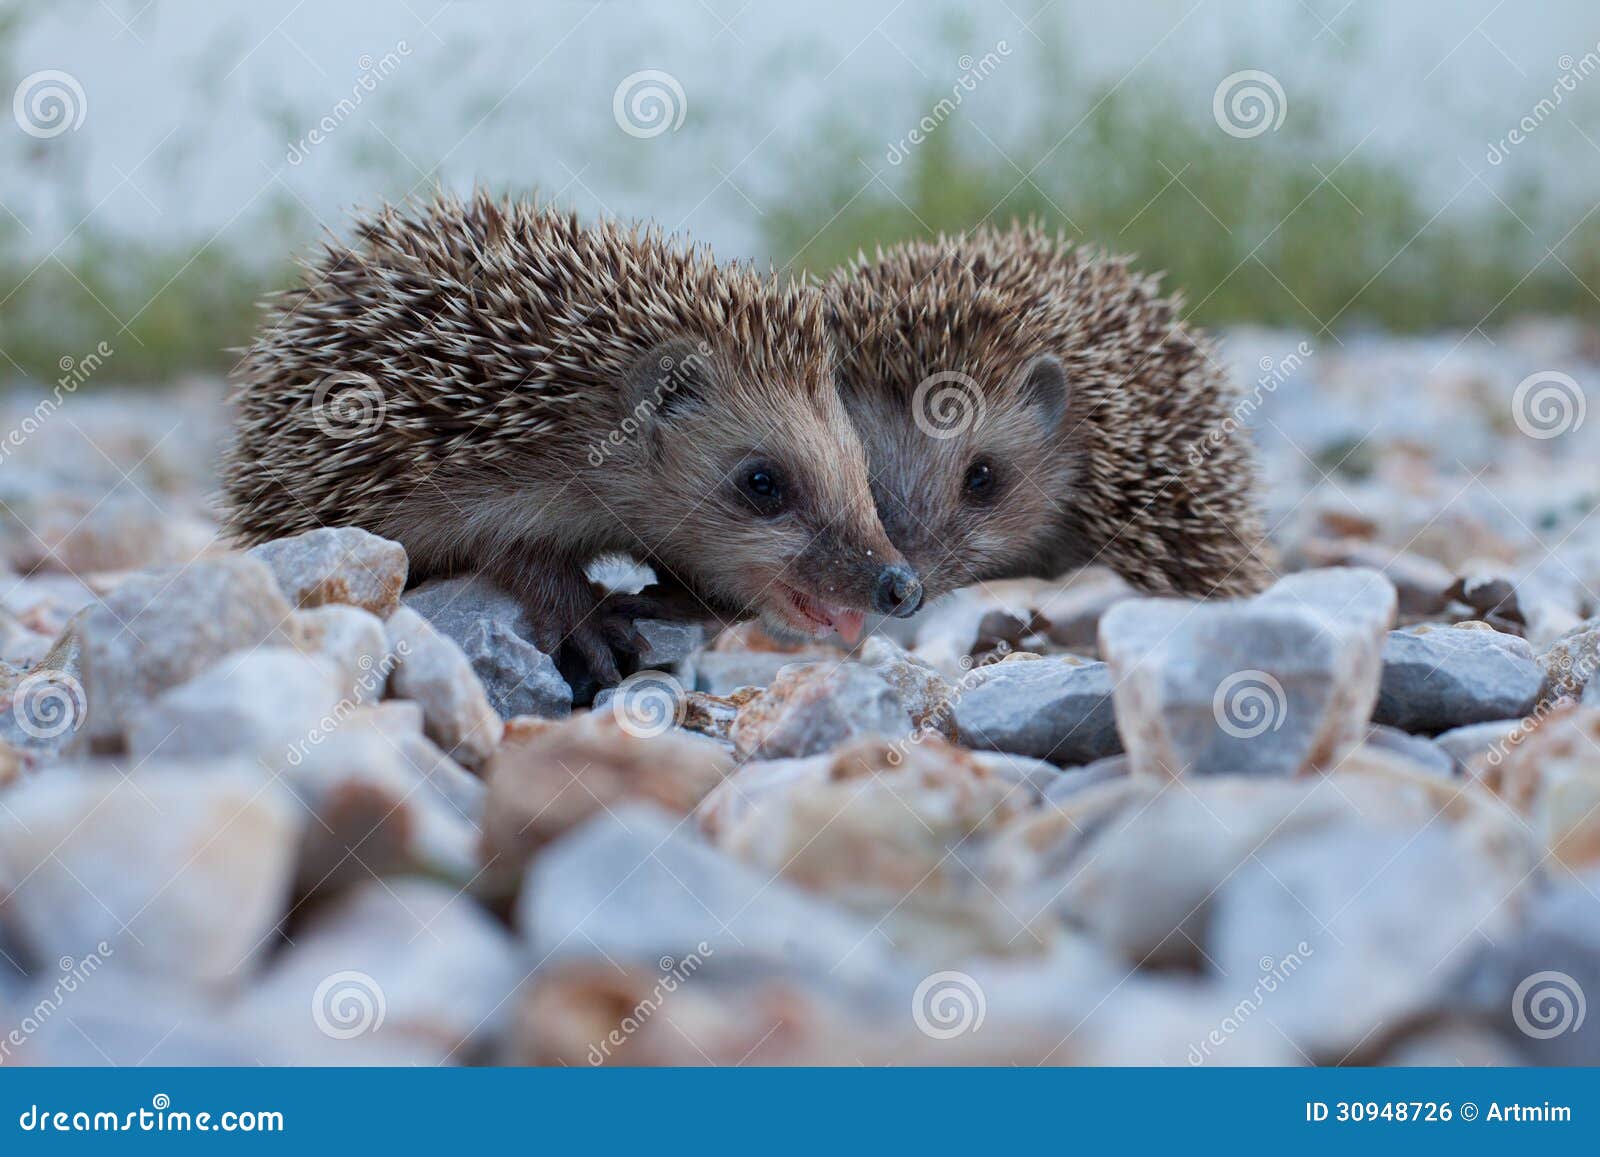 cute hedgehog, wildlife